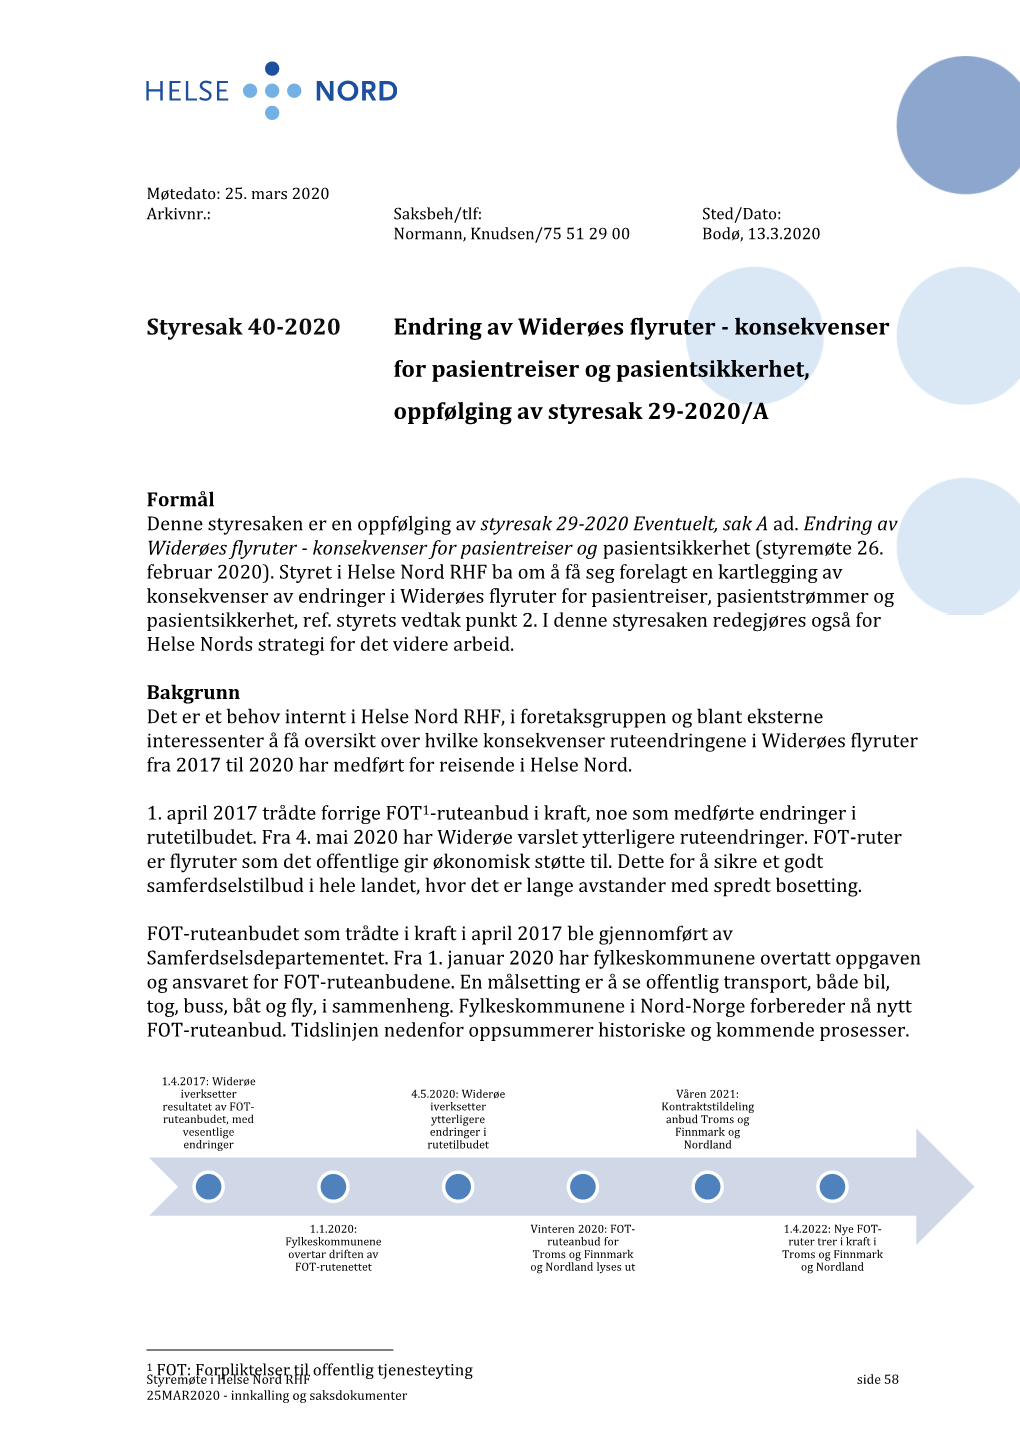 Styresak 40-2020 Endring Av Widerøes Flyruter - Konsekvenser for Pasientreiser Og Pasientsikkerhet, Oppfølging Av Styresak 29-2020/A